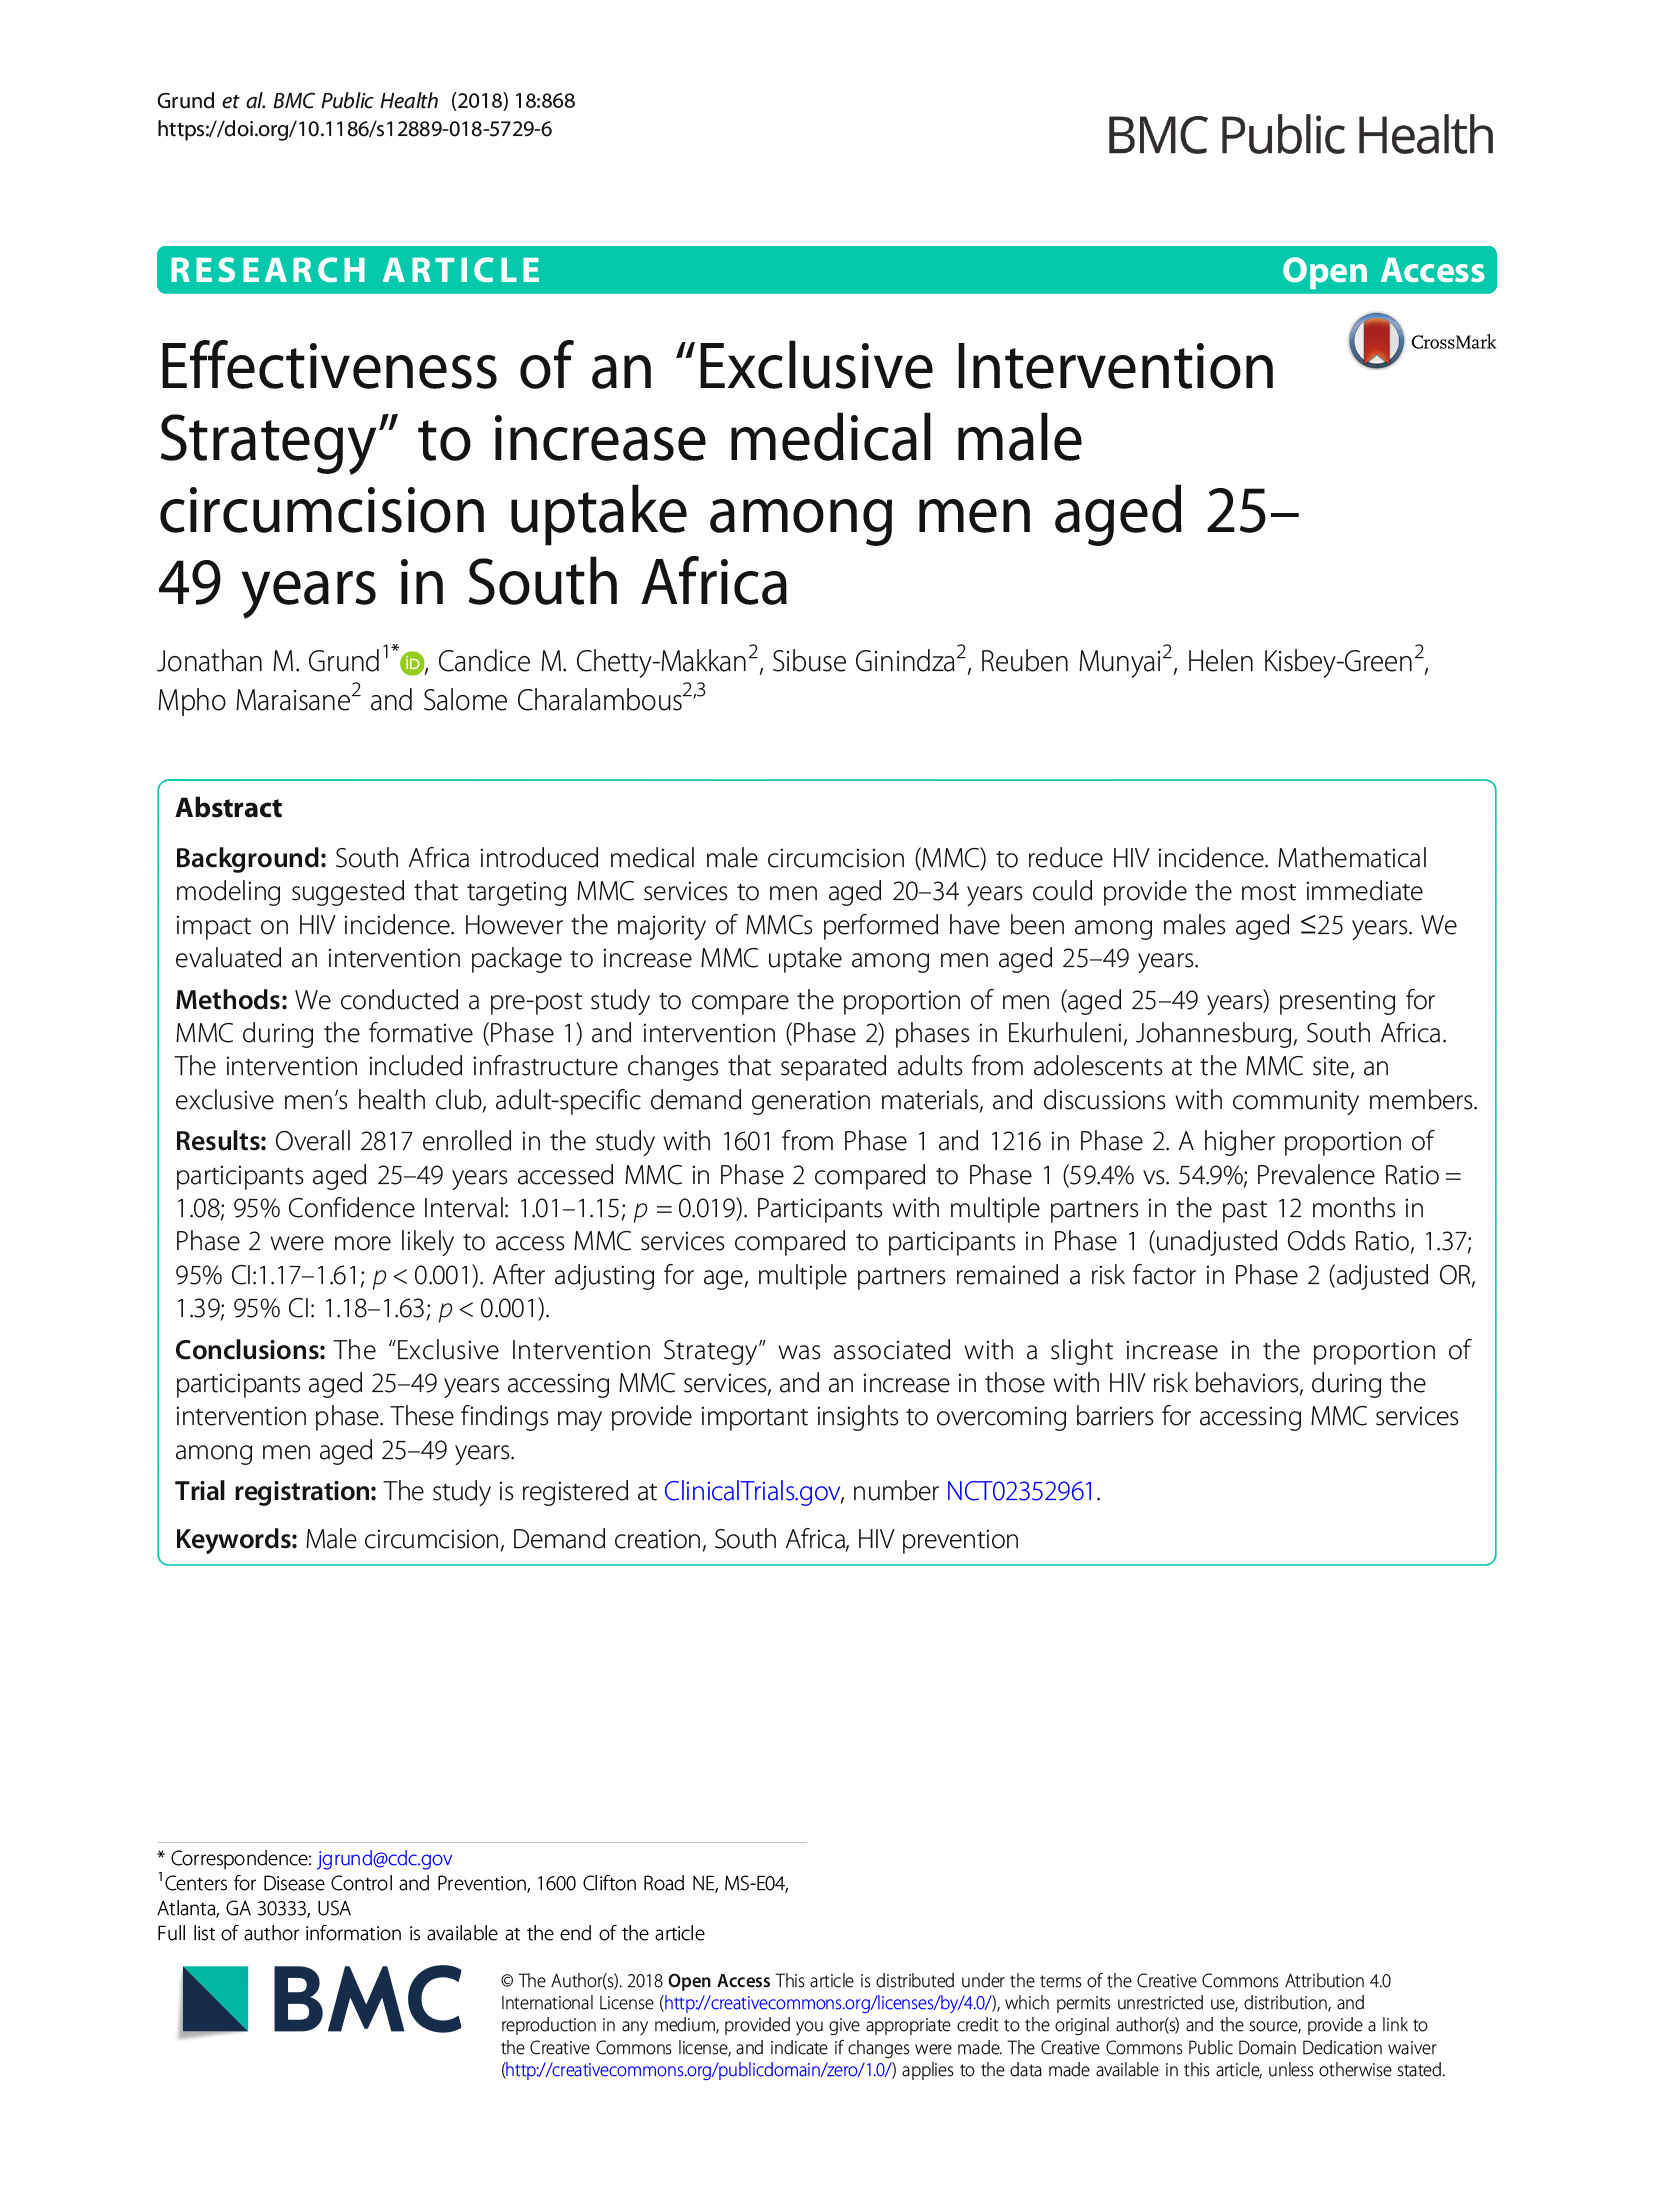 Efficacité d'une "stratégie d'intervention exclusive" pour augmenter le recours à la circoncision médicale chez les hommes âgés de 25 à 49 ans en Afrique du Sud - couverture